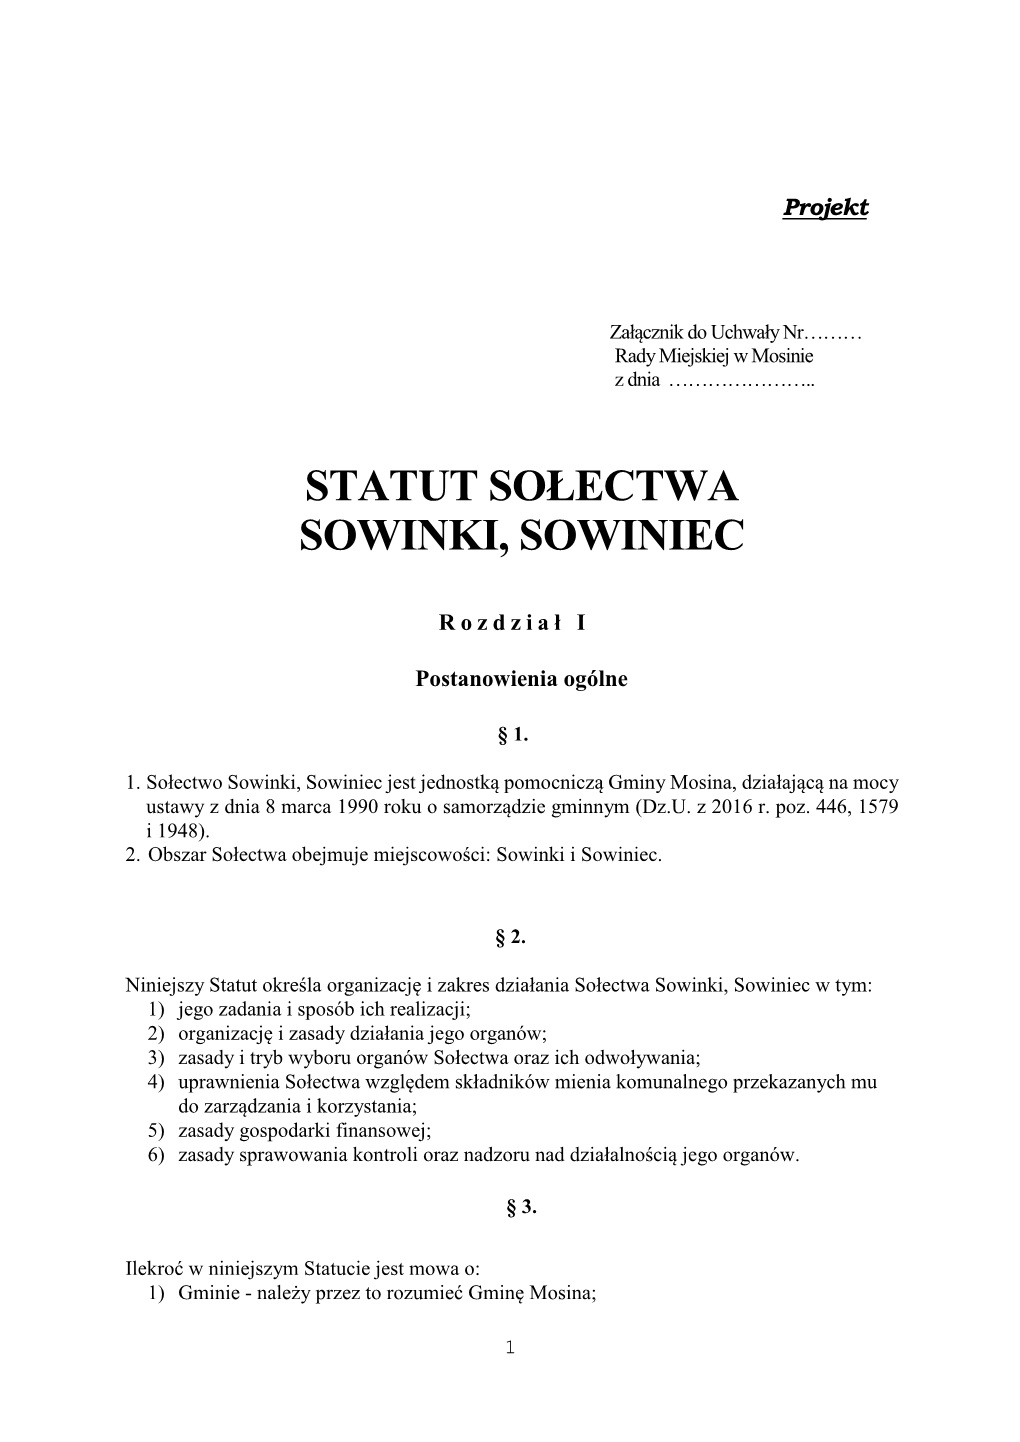 Statut Sołectwa Sowinki, Sowiniec